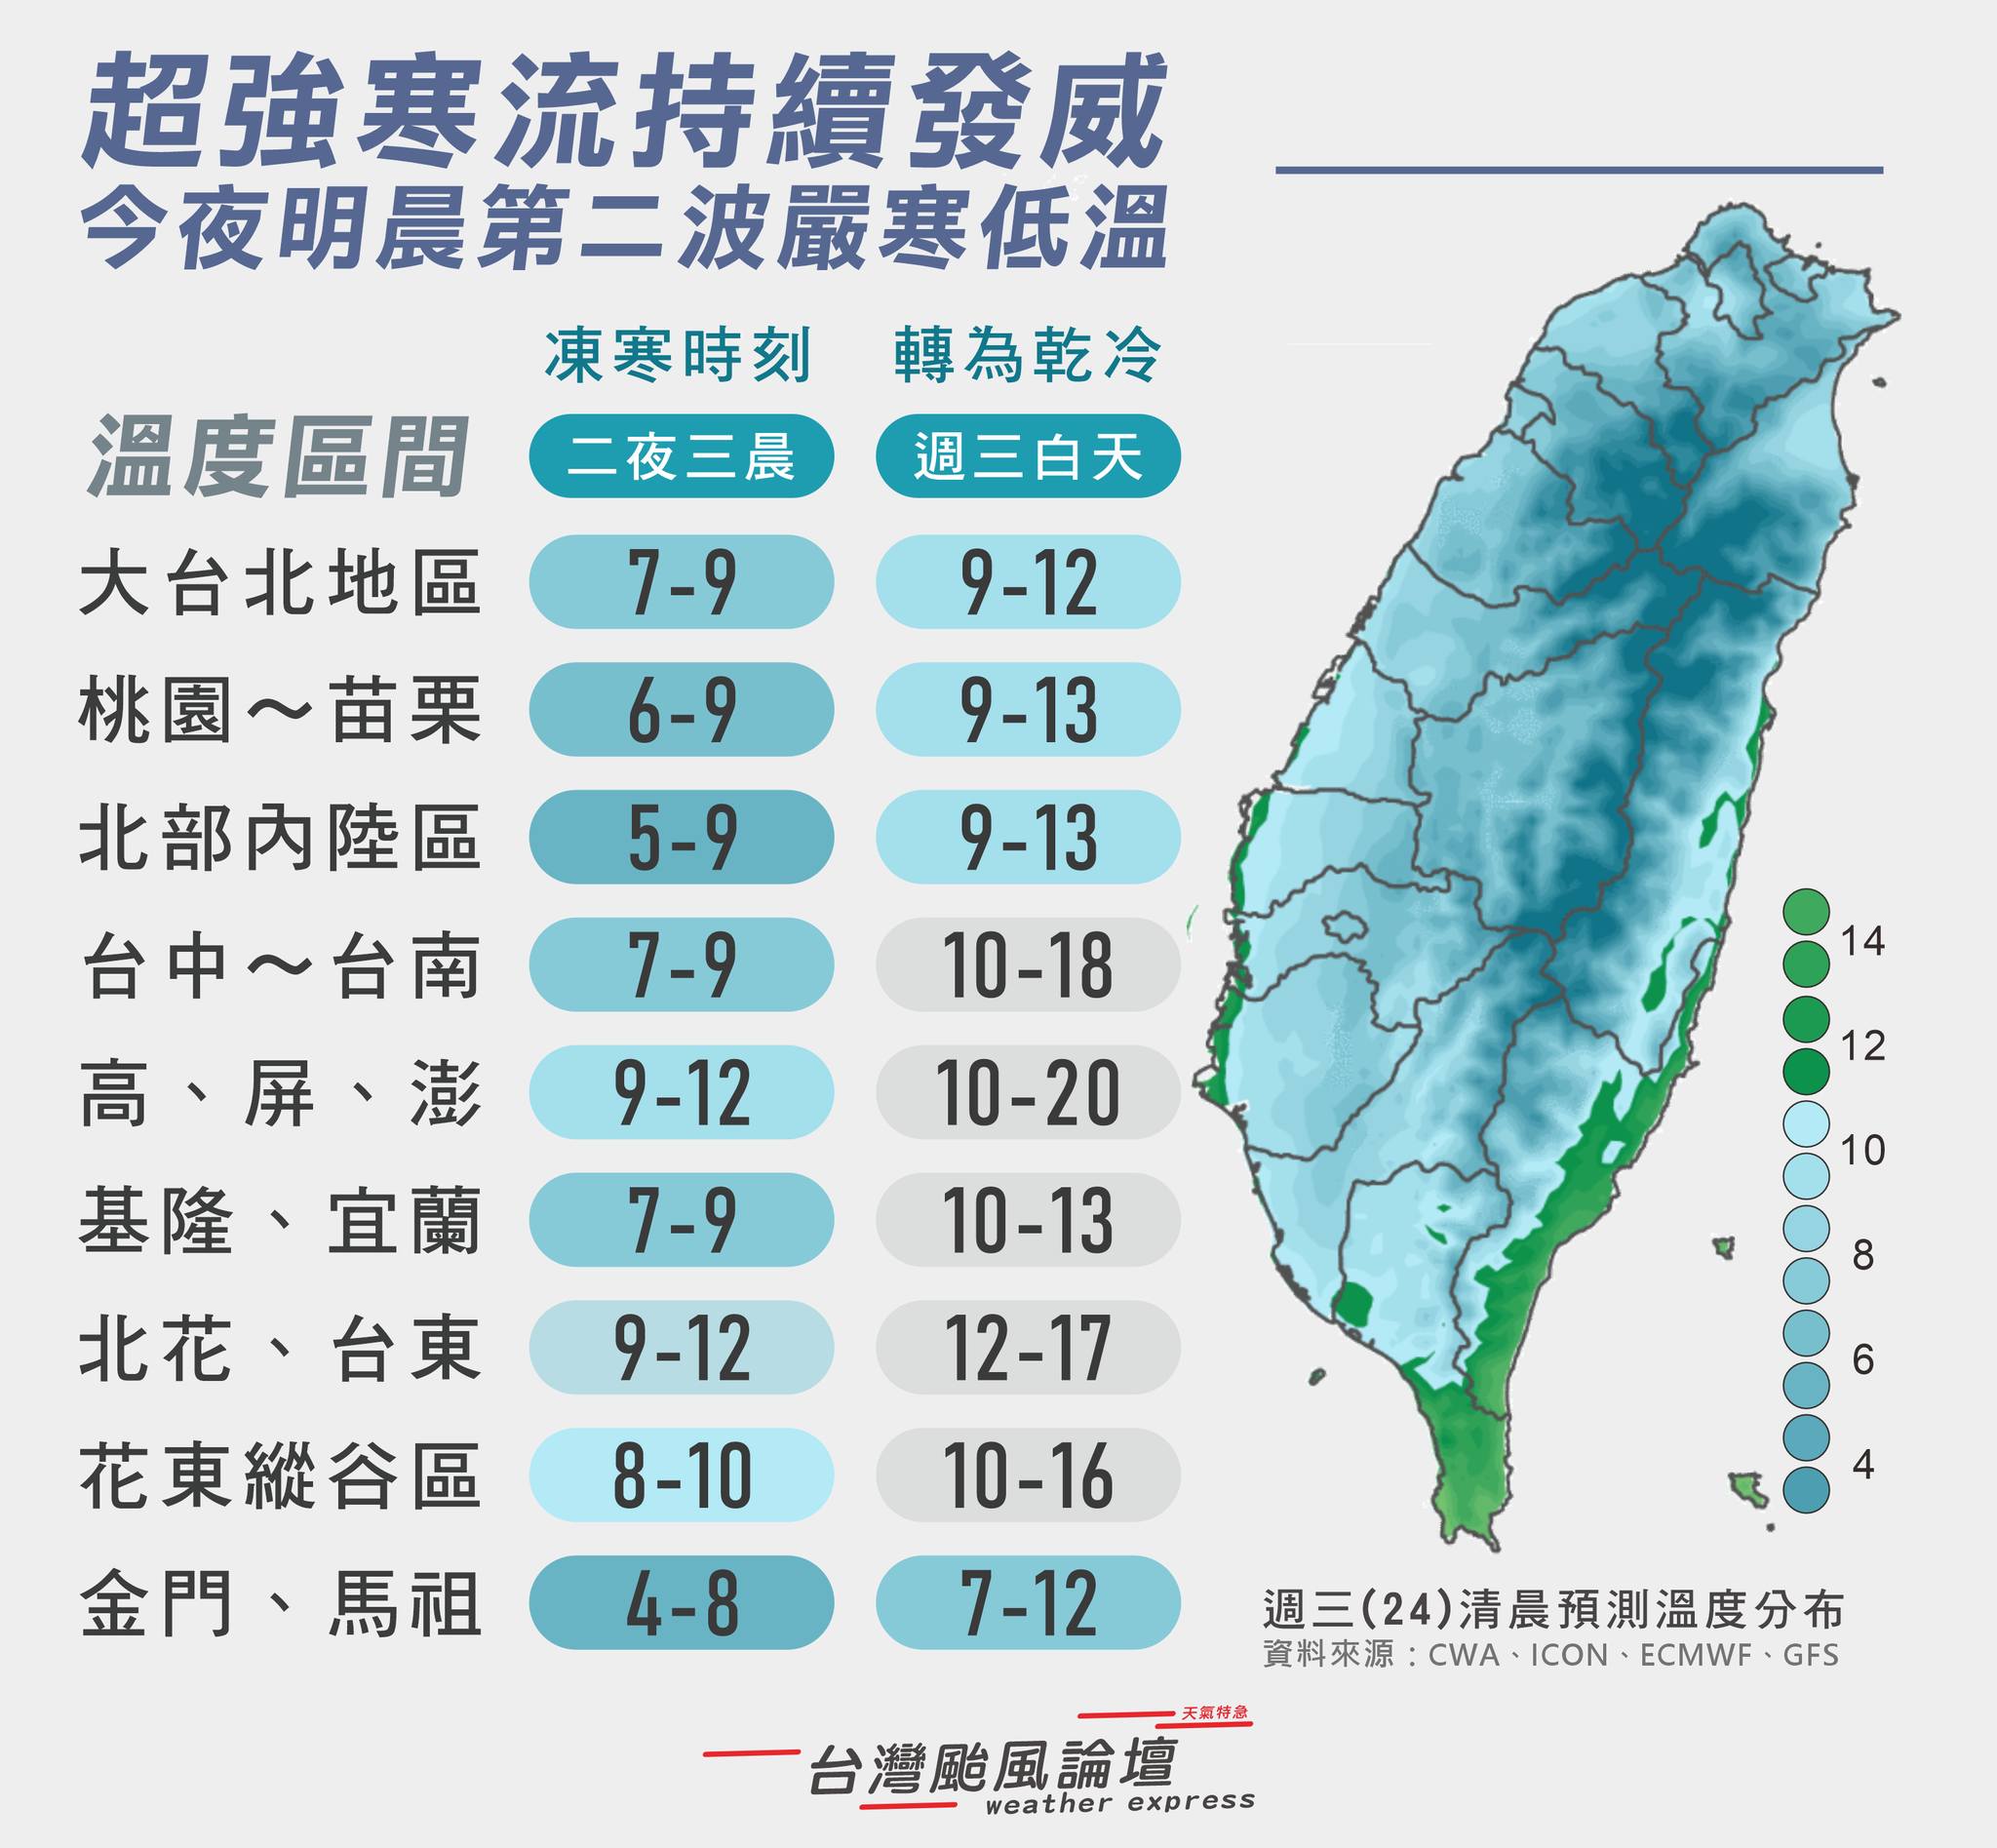 今天白天會稍許回溫。圖/取自台灣颱風論壇天氣特急《臉書》官方粉專